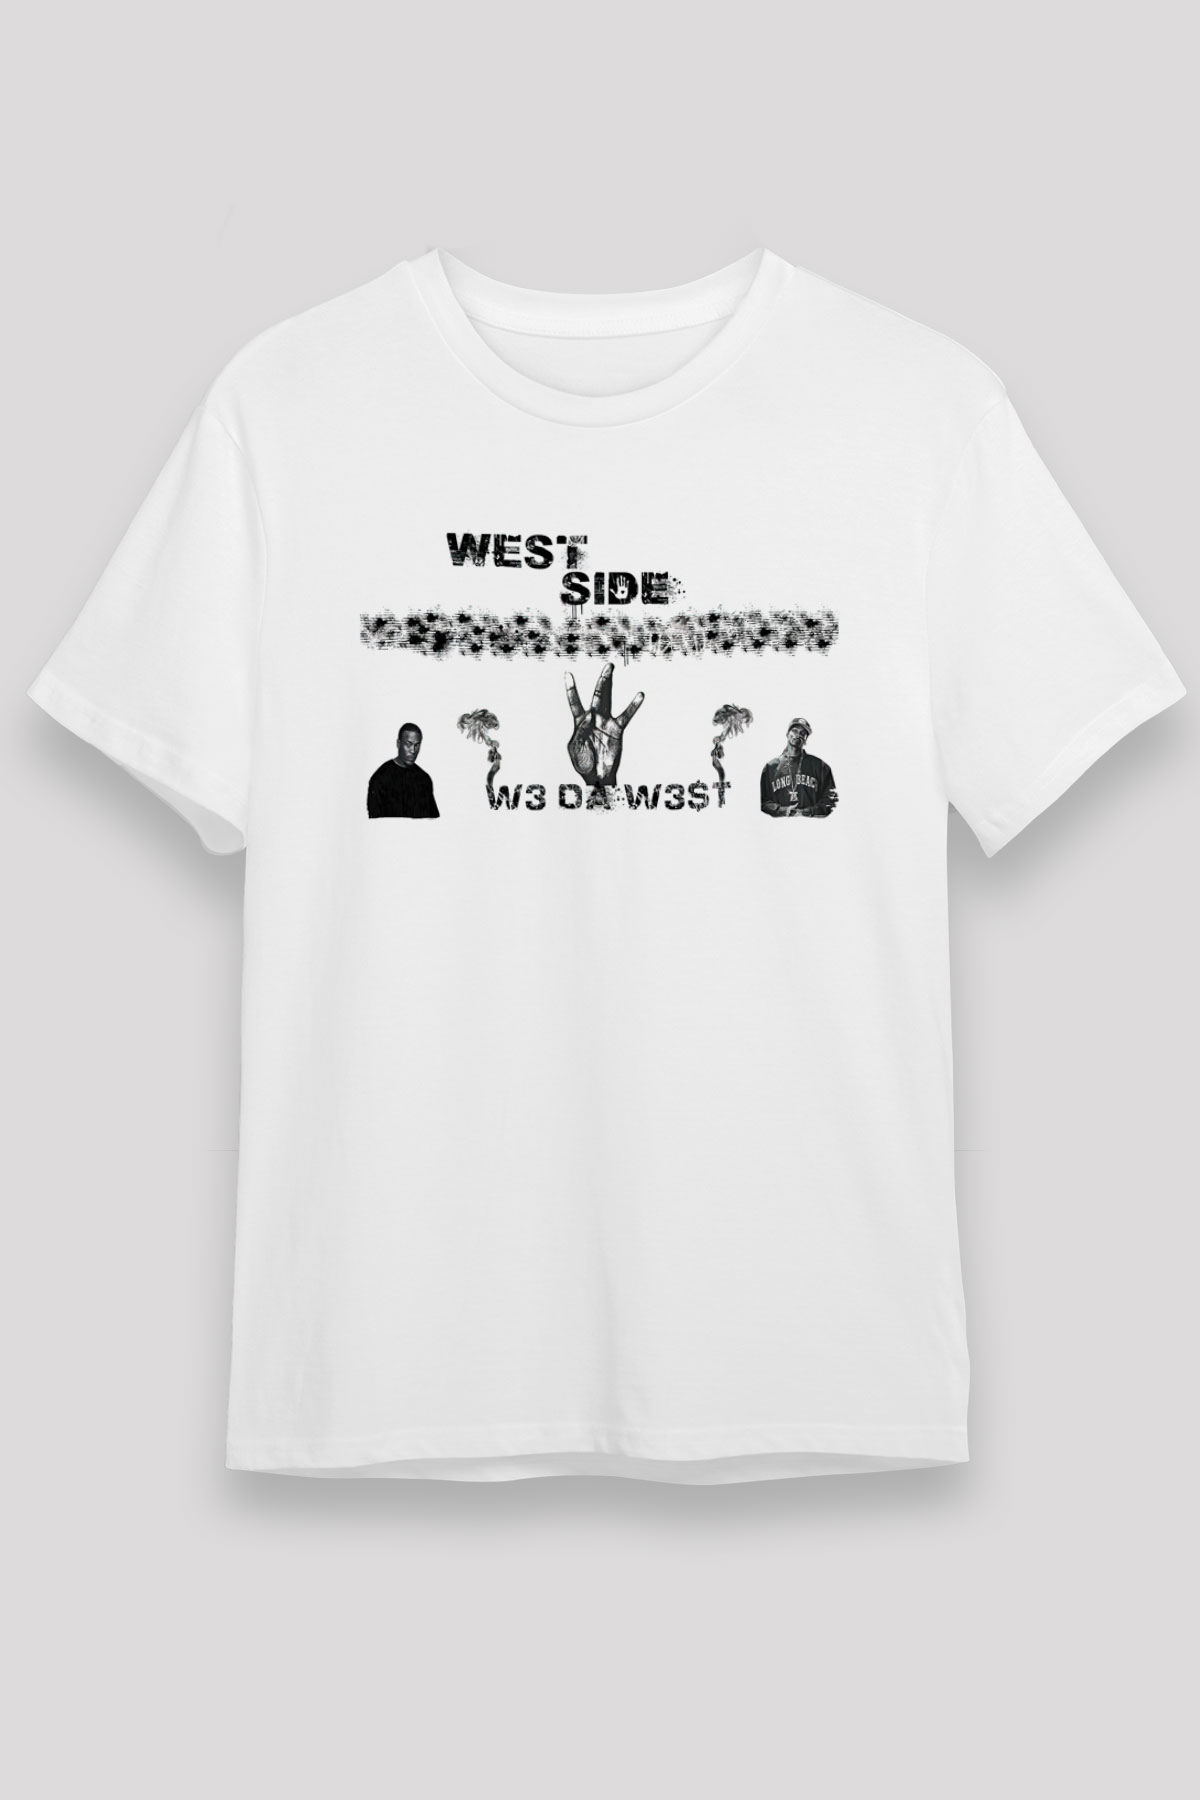 West Side Connection T shirt,Hip Hop,Rap Tshirt 01